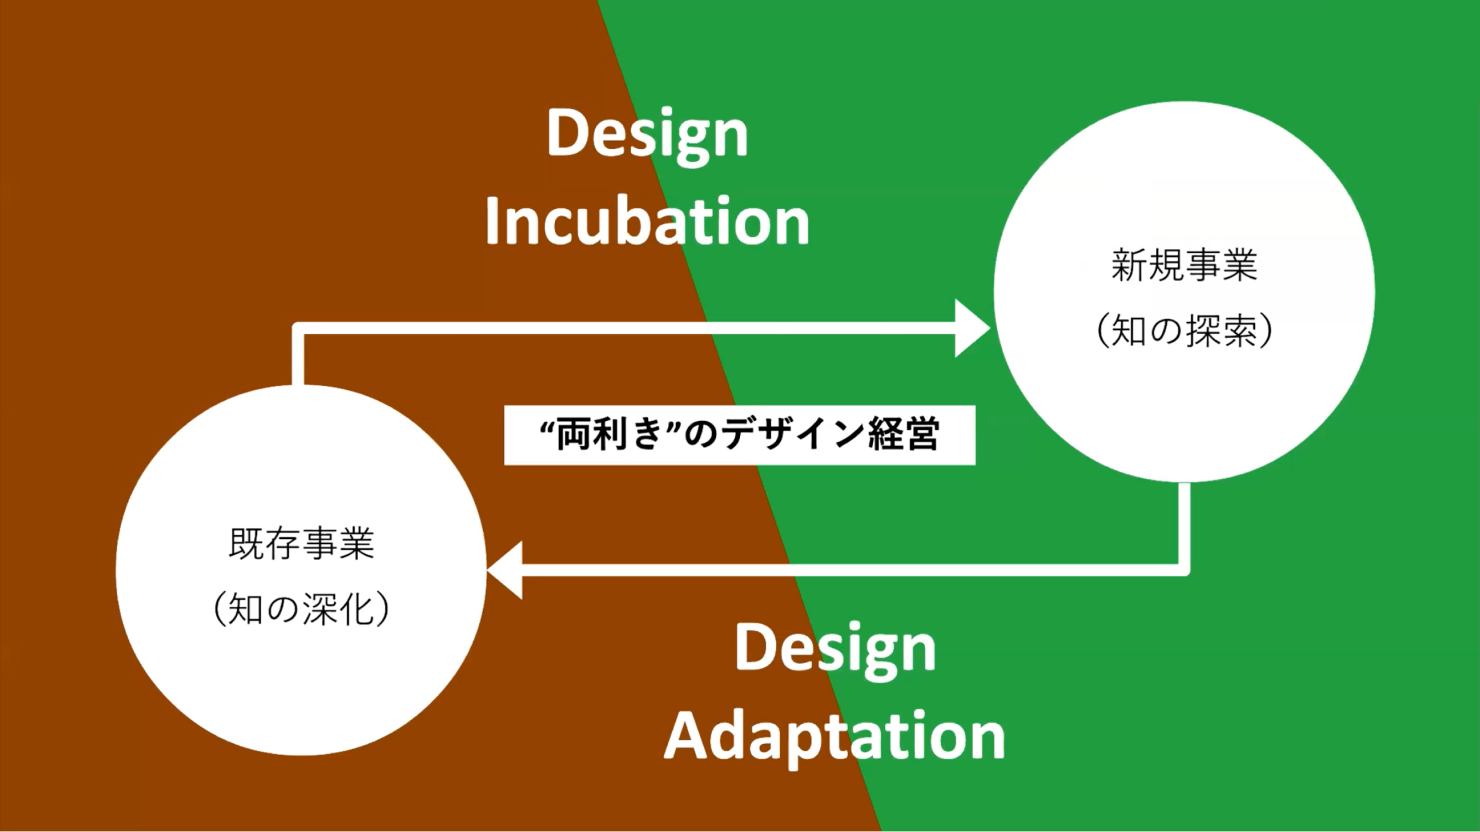 発表資料：両利きのデザイン経営の考え方を説明した図。既存事業から新規事業に「Design Incubation」の矢印が、新規事業から既存事業に「Design Adaptation」の矢印が引かれており、この2つのベクトルを両輪としてやっていくのが「両利きのデザイン経営」であると示されている。